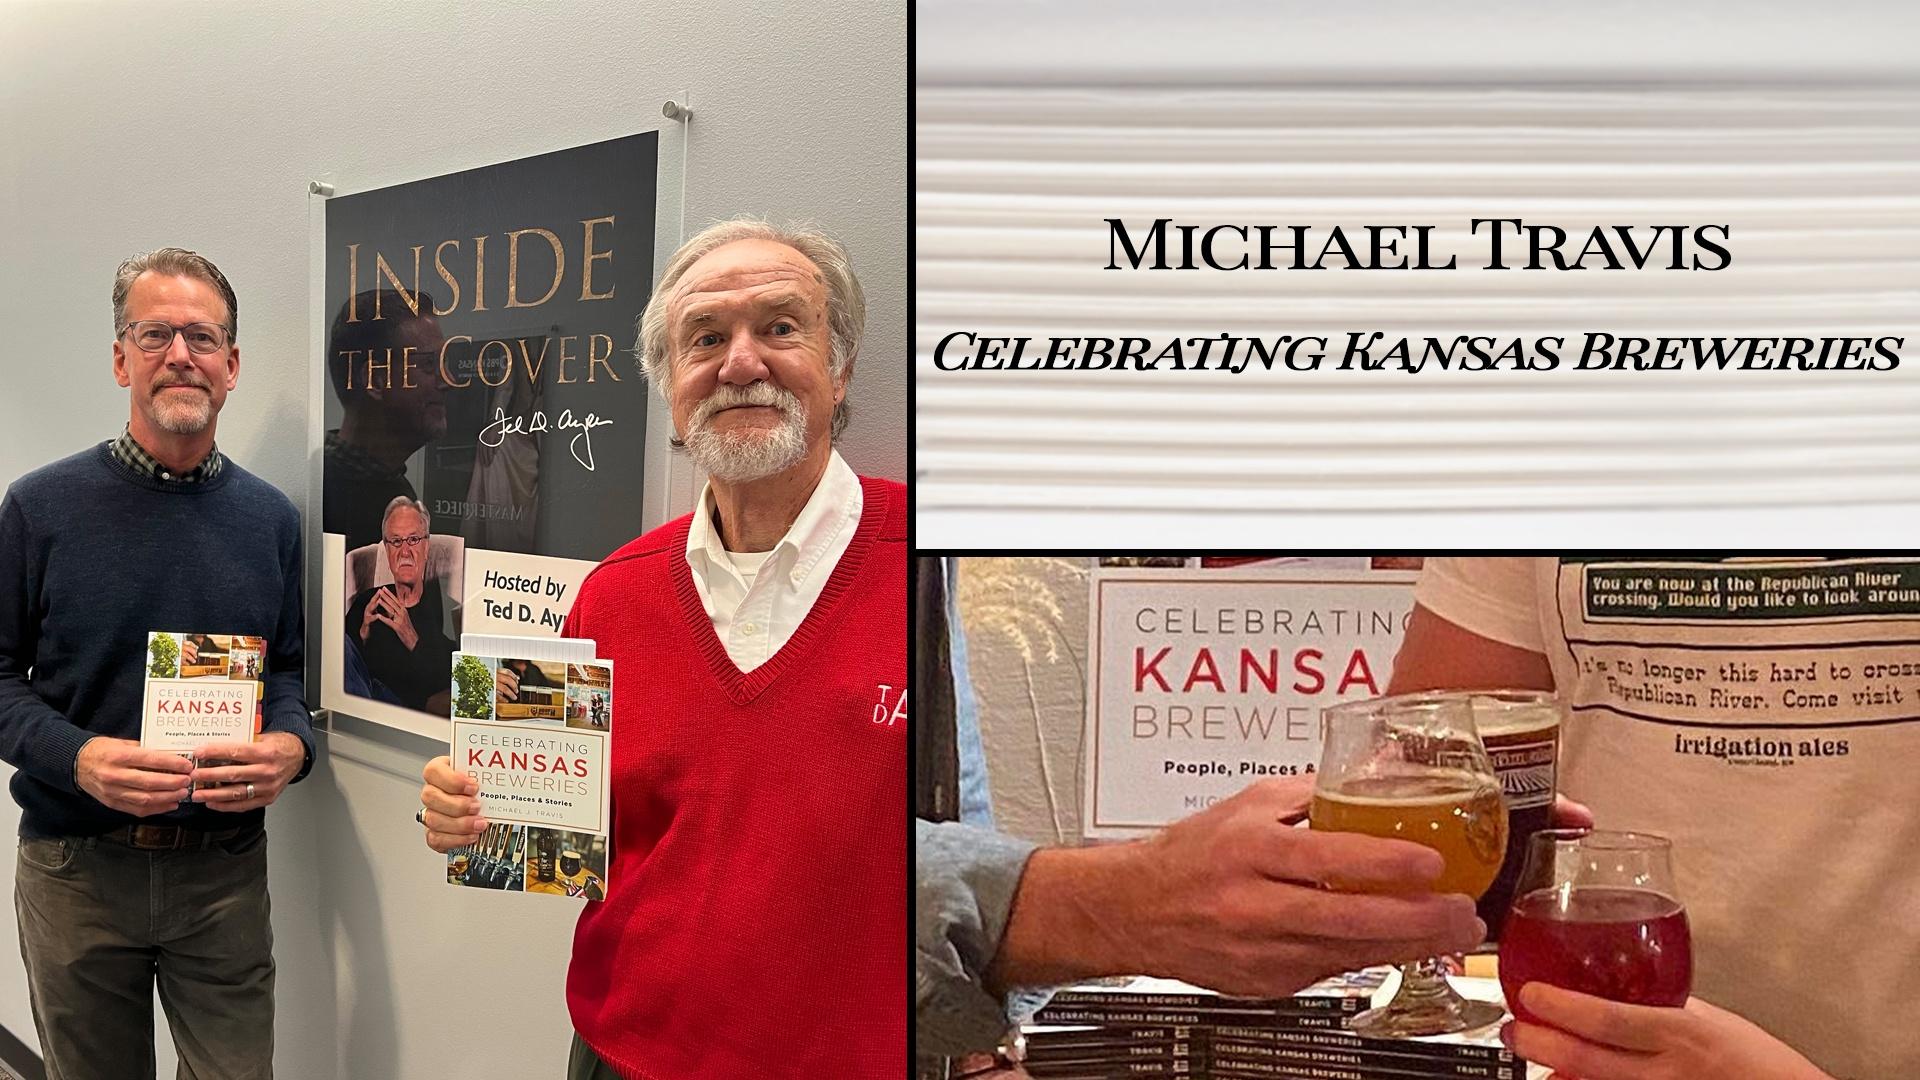 Michael Travis "Celebrating Kansas Breweries"